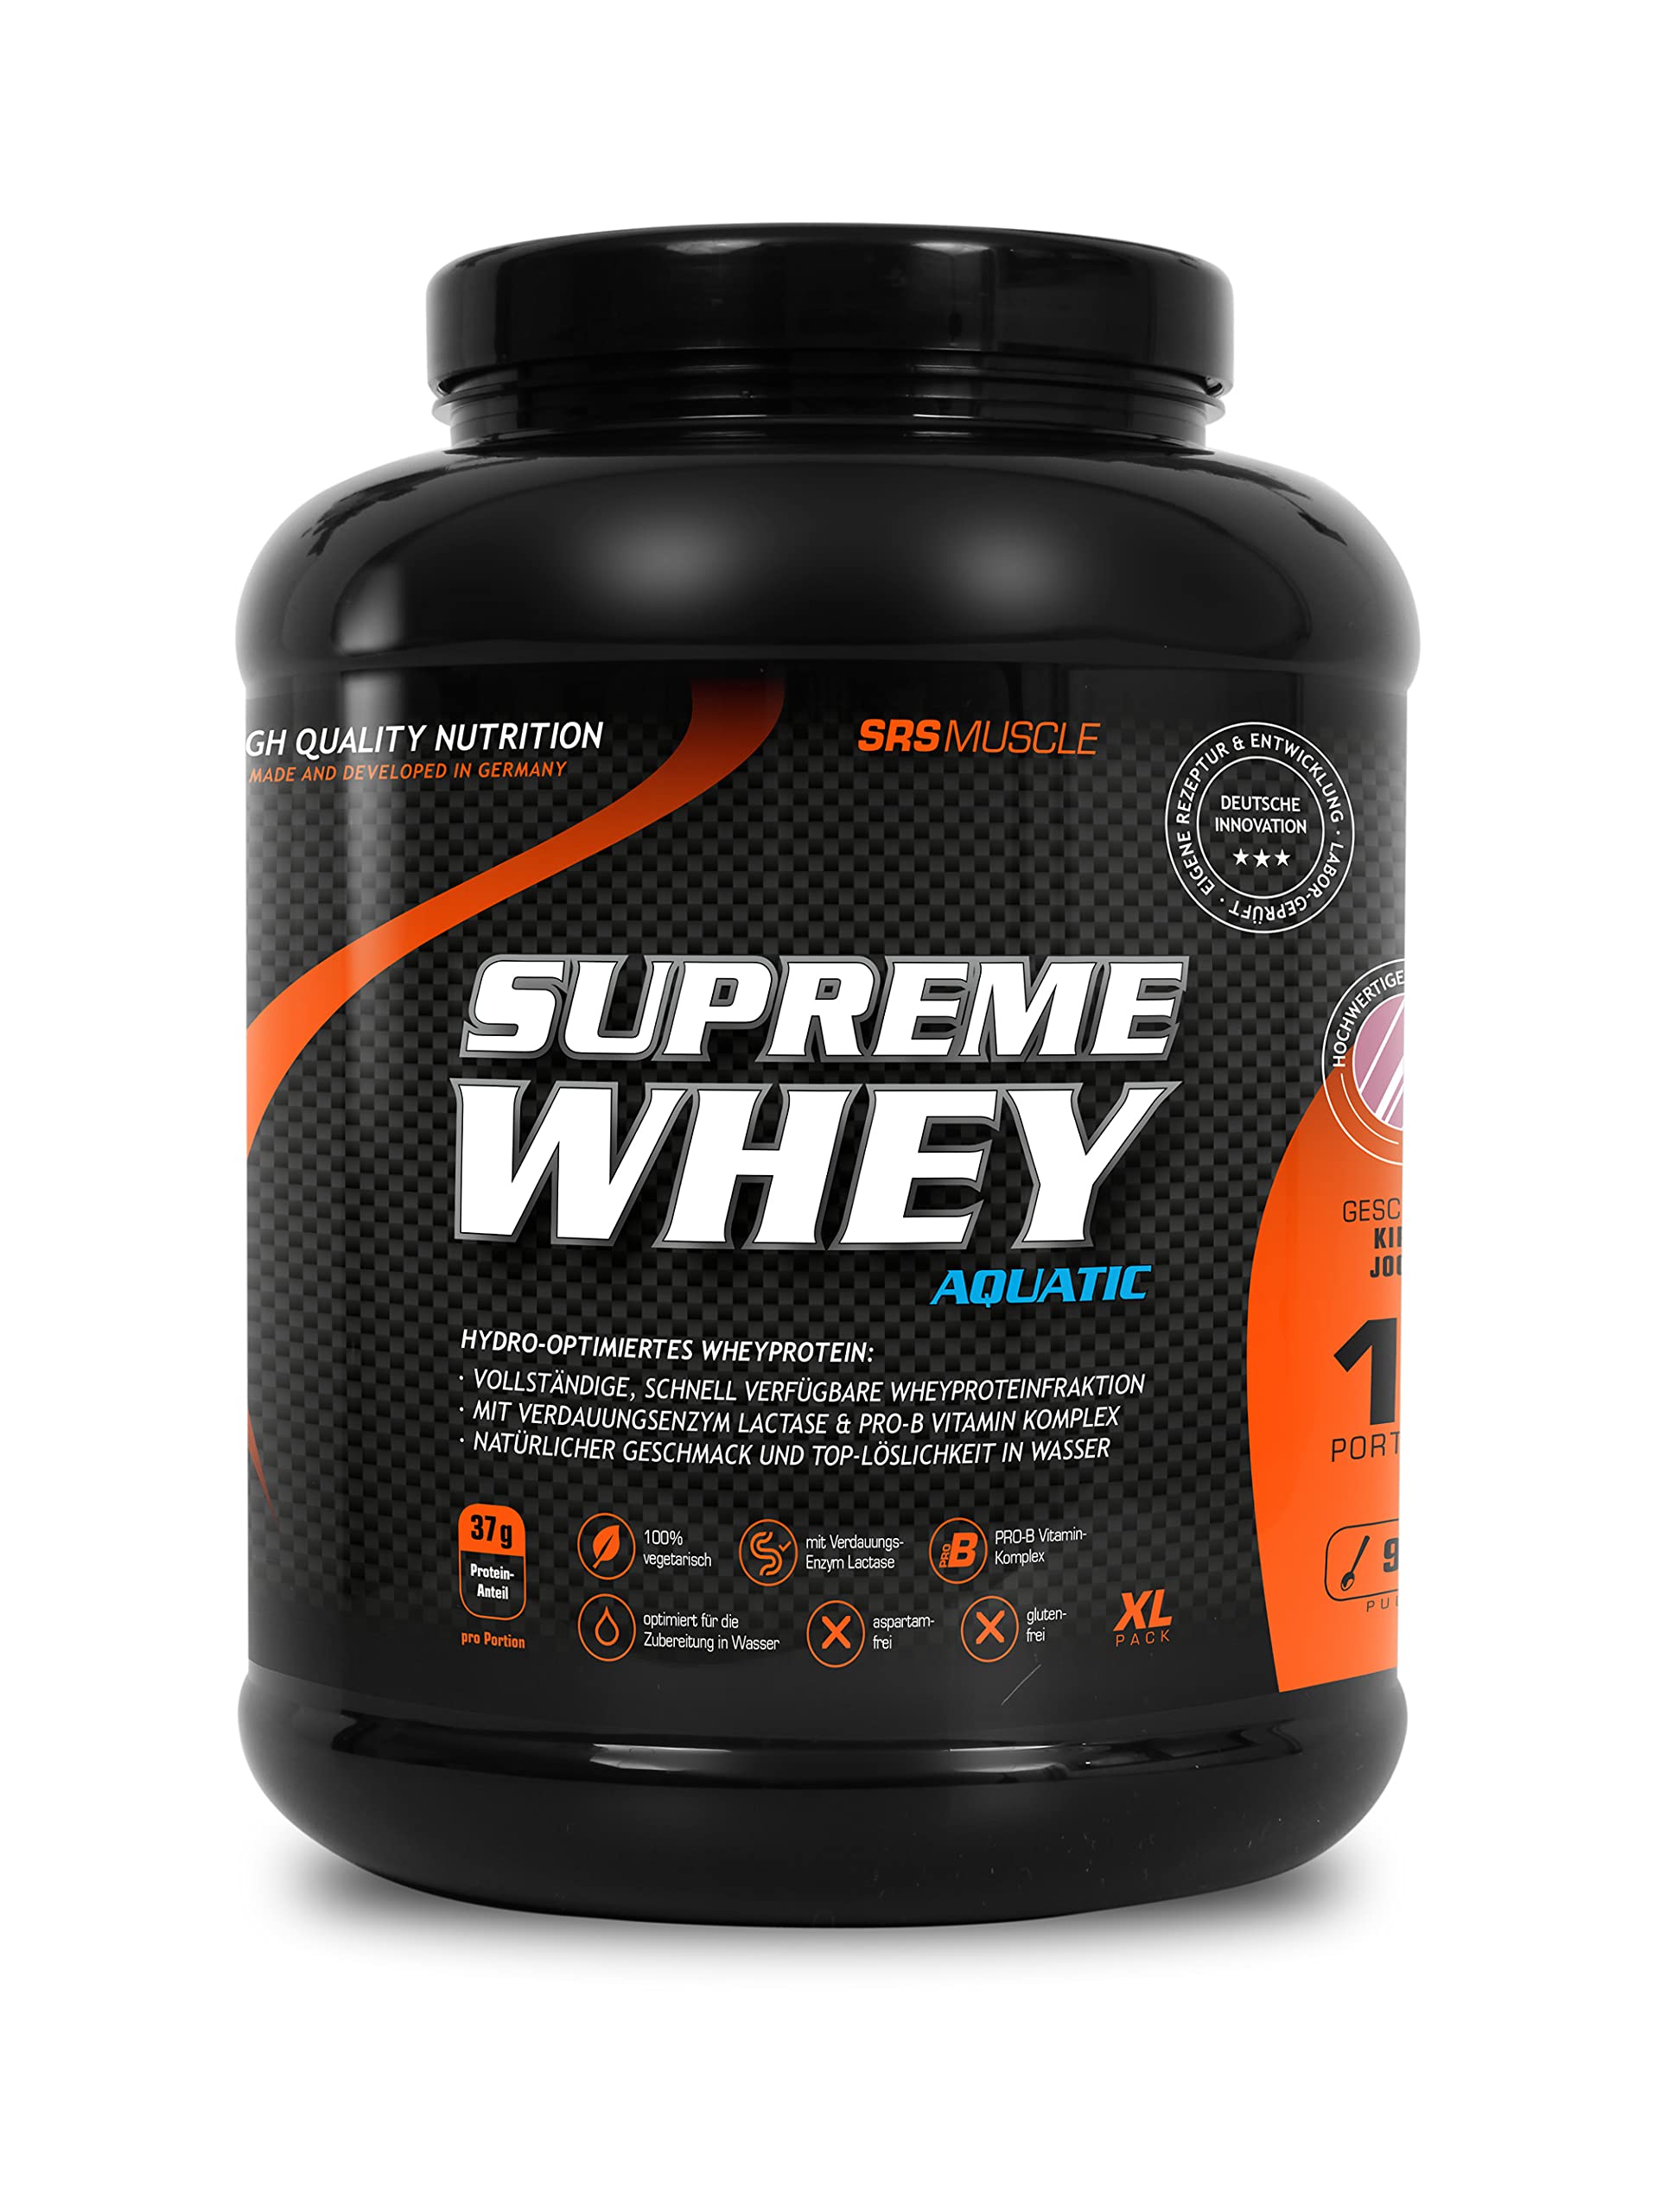 SRS Muscle - Supreme Whey XL, 900 g, Schwarze Johannisbeere | Hydro-optimized Whey Protein | mit Enzym Laktase und Pro-B Vitaminen | aspartamfrei | deutsche Premiumqualität